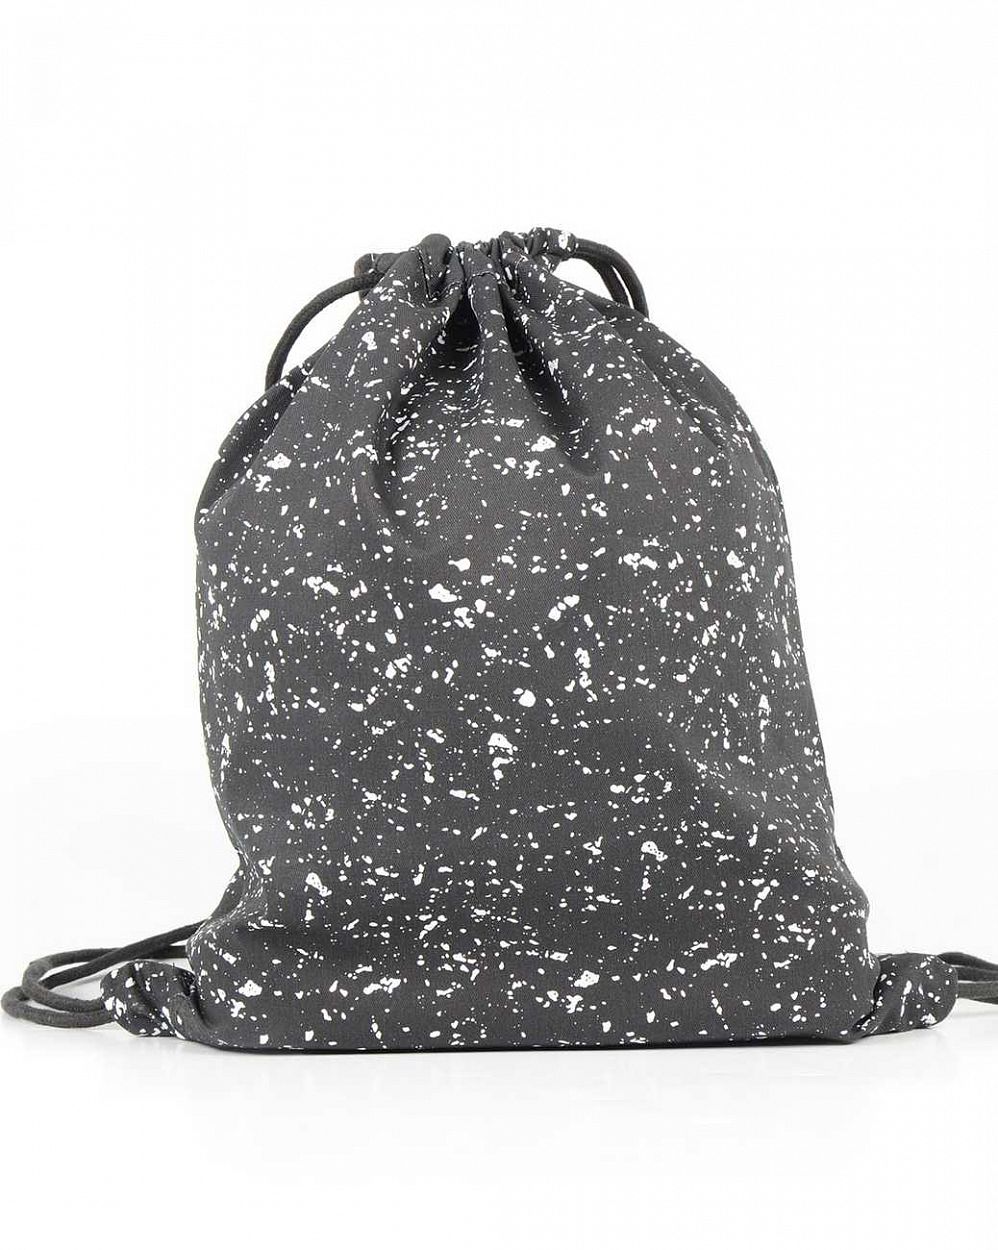 Рюкзак-мешок холщовый Mi-Pac Premium Kit Gym Bag splattered black white отзывы